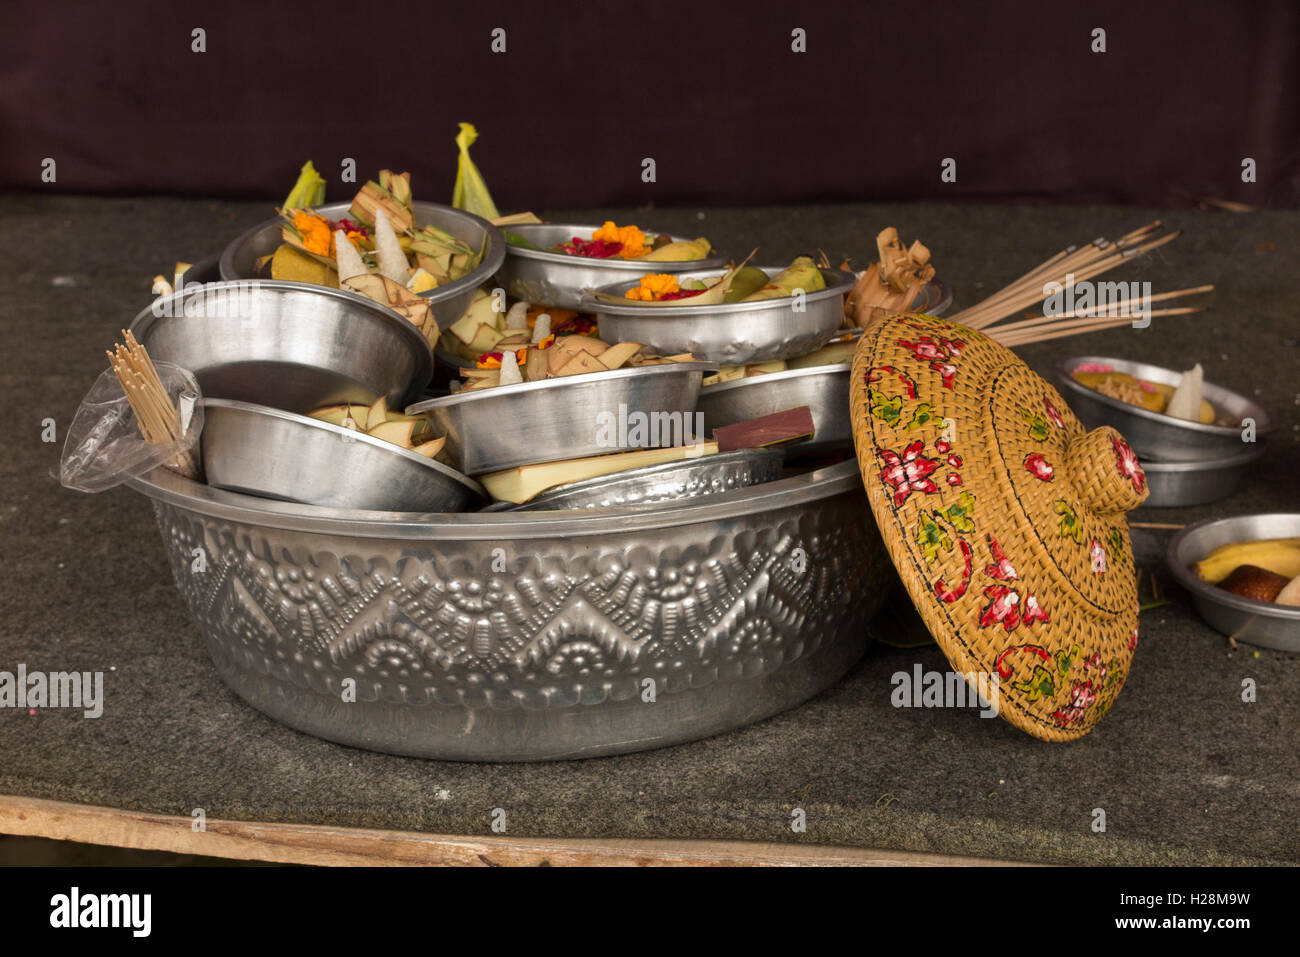 Indonesia, Bali, Batur, Pura Ulun Danu Batur, Kuningan festival offerings in metal bowl Stock Photo